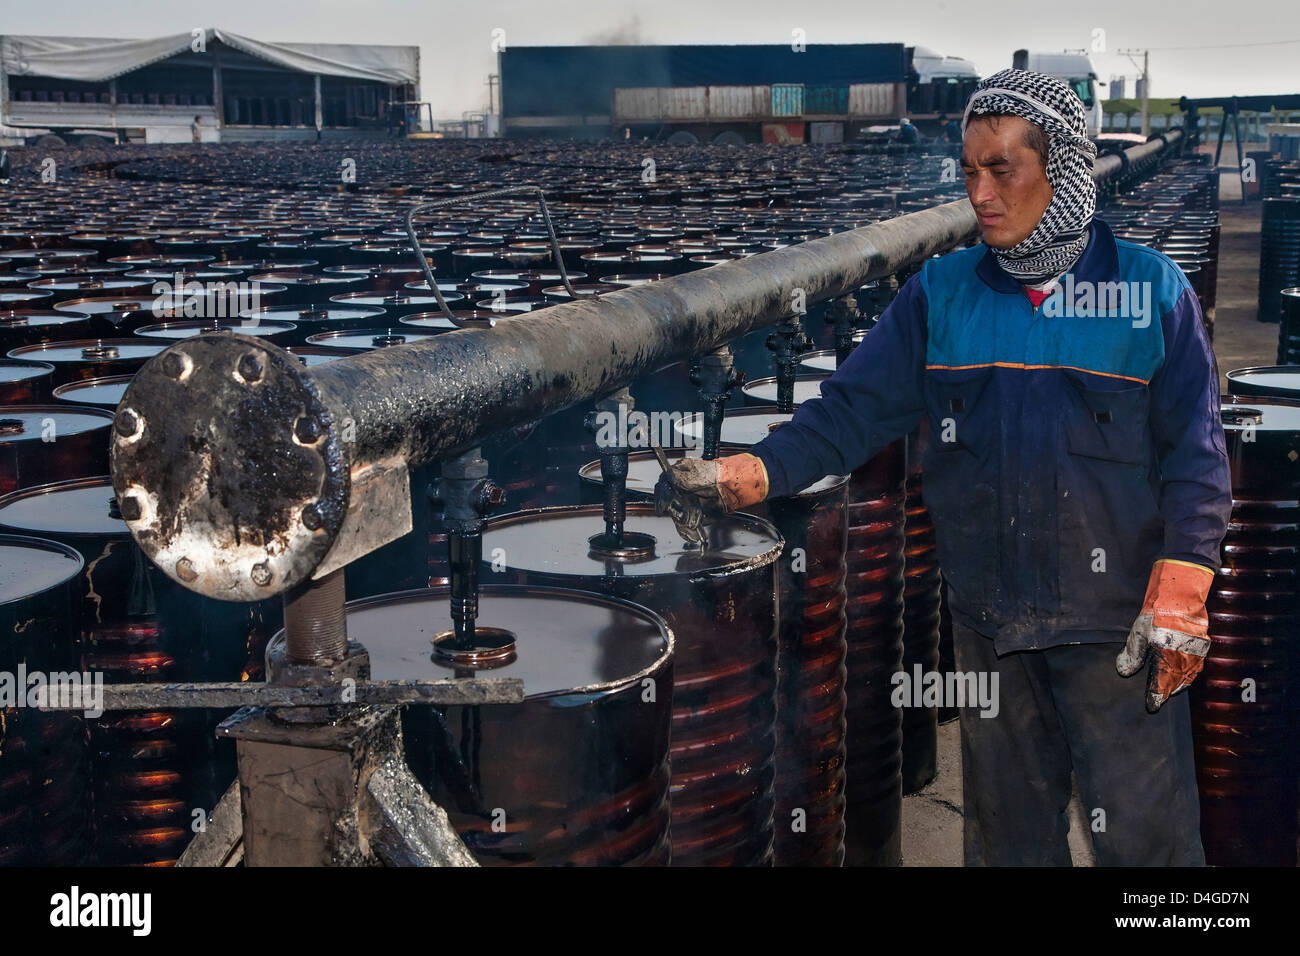 Le travail de l'Afghanistan est travaillent dans une industrie pétrolière de l'Iran Banque D'Images